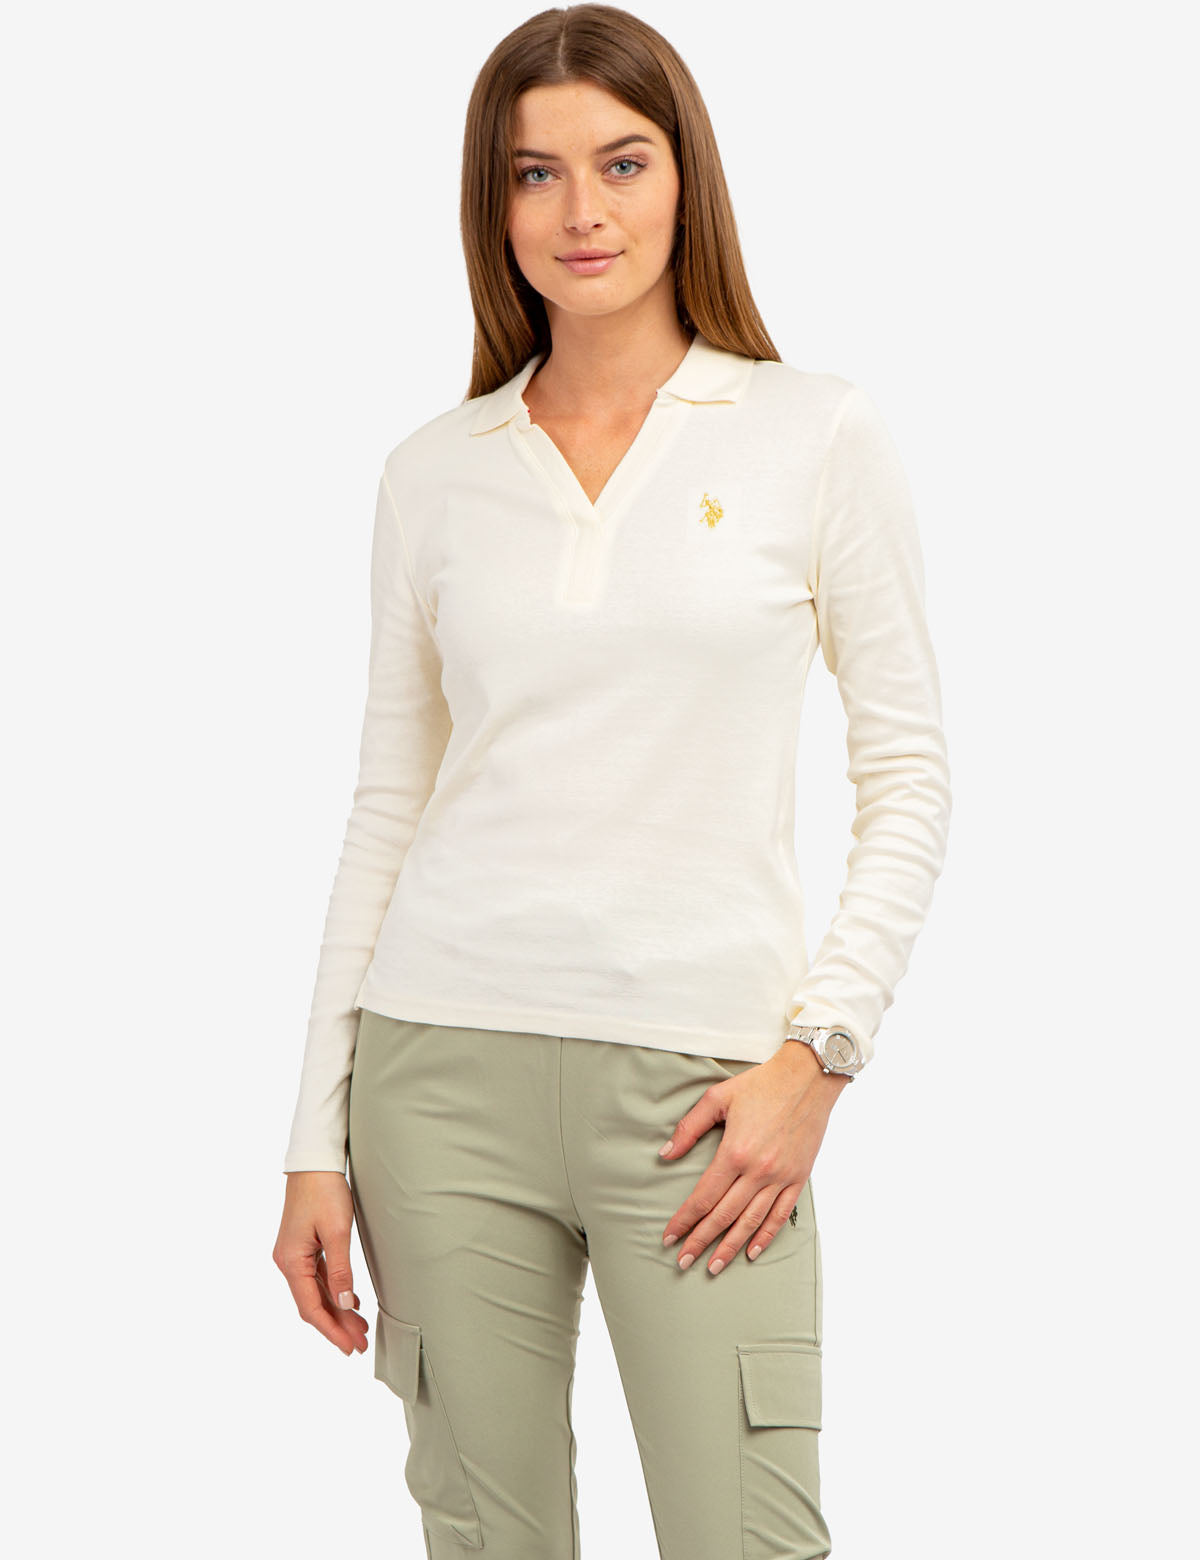 Женская рубашка-поло с длинным рукавом U.S. POLO ASSN. U.S. POLO ASSN.